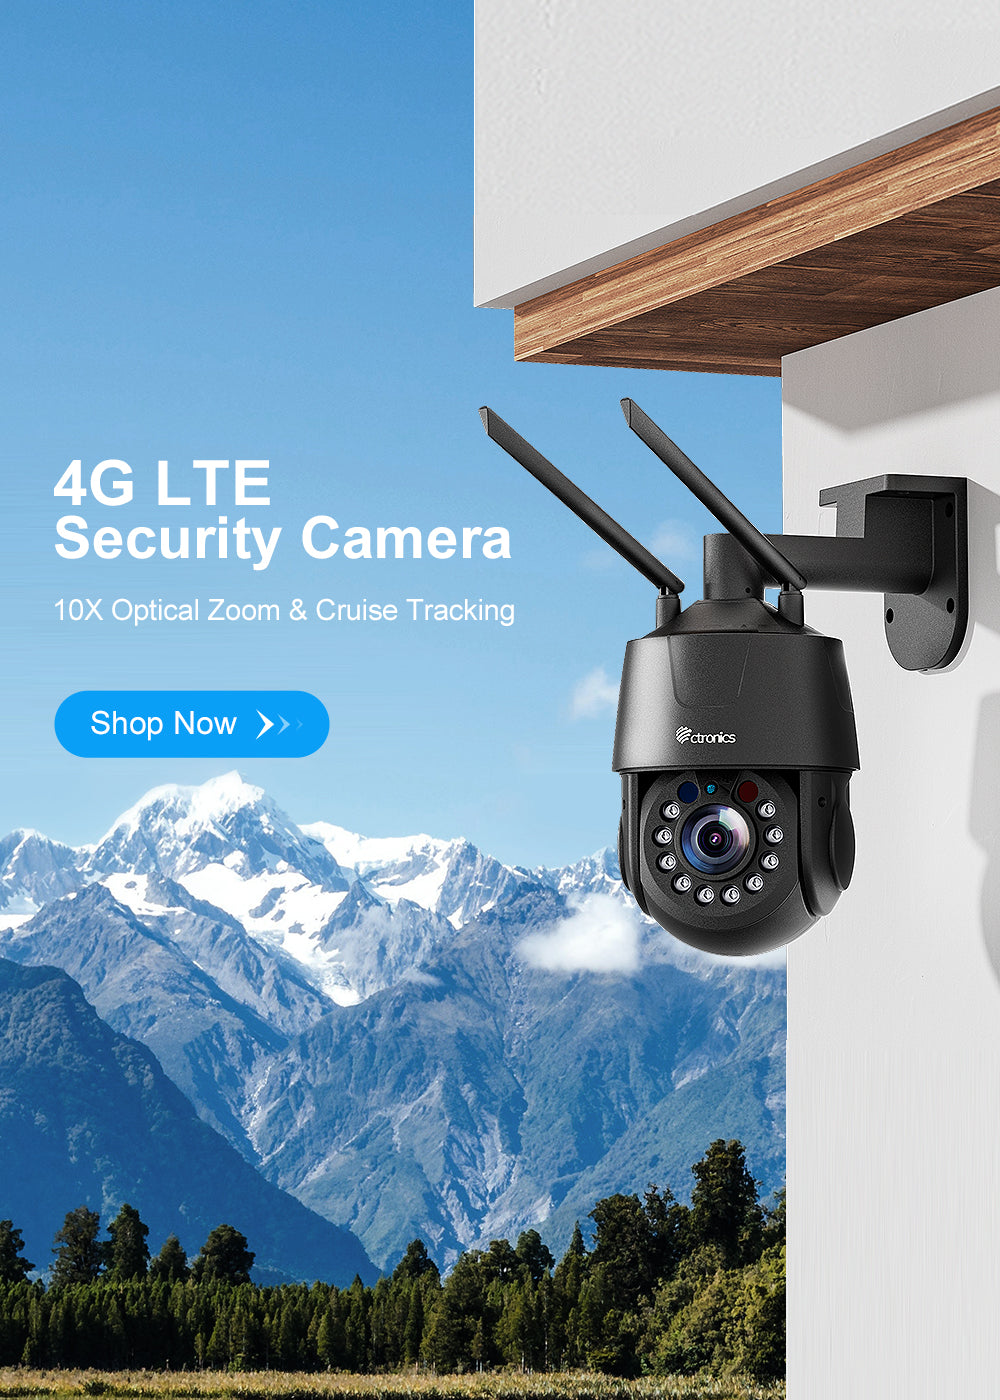 15€ sur CTRONICS Caméra Surveillance WiFi Exterieure PTZ IP Camera